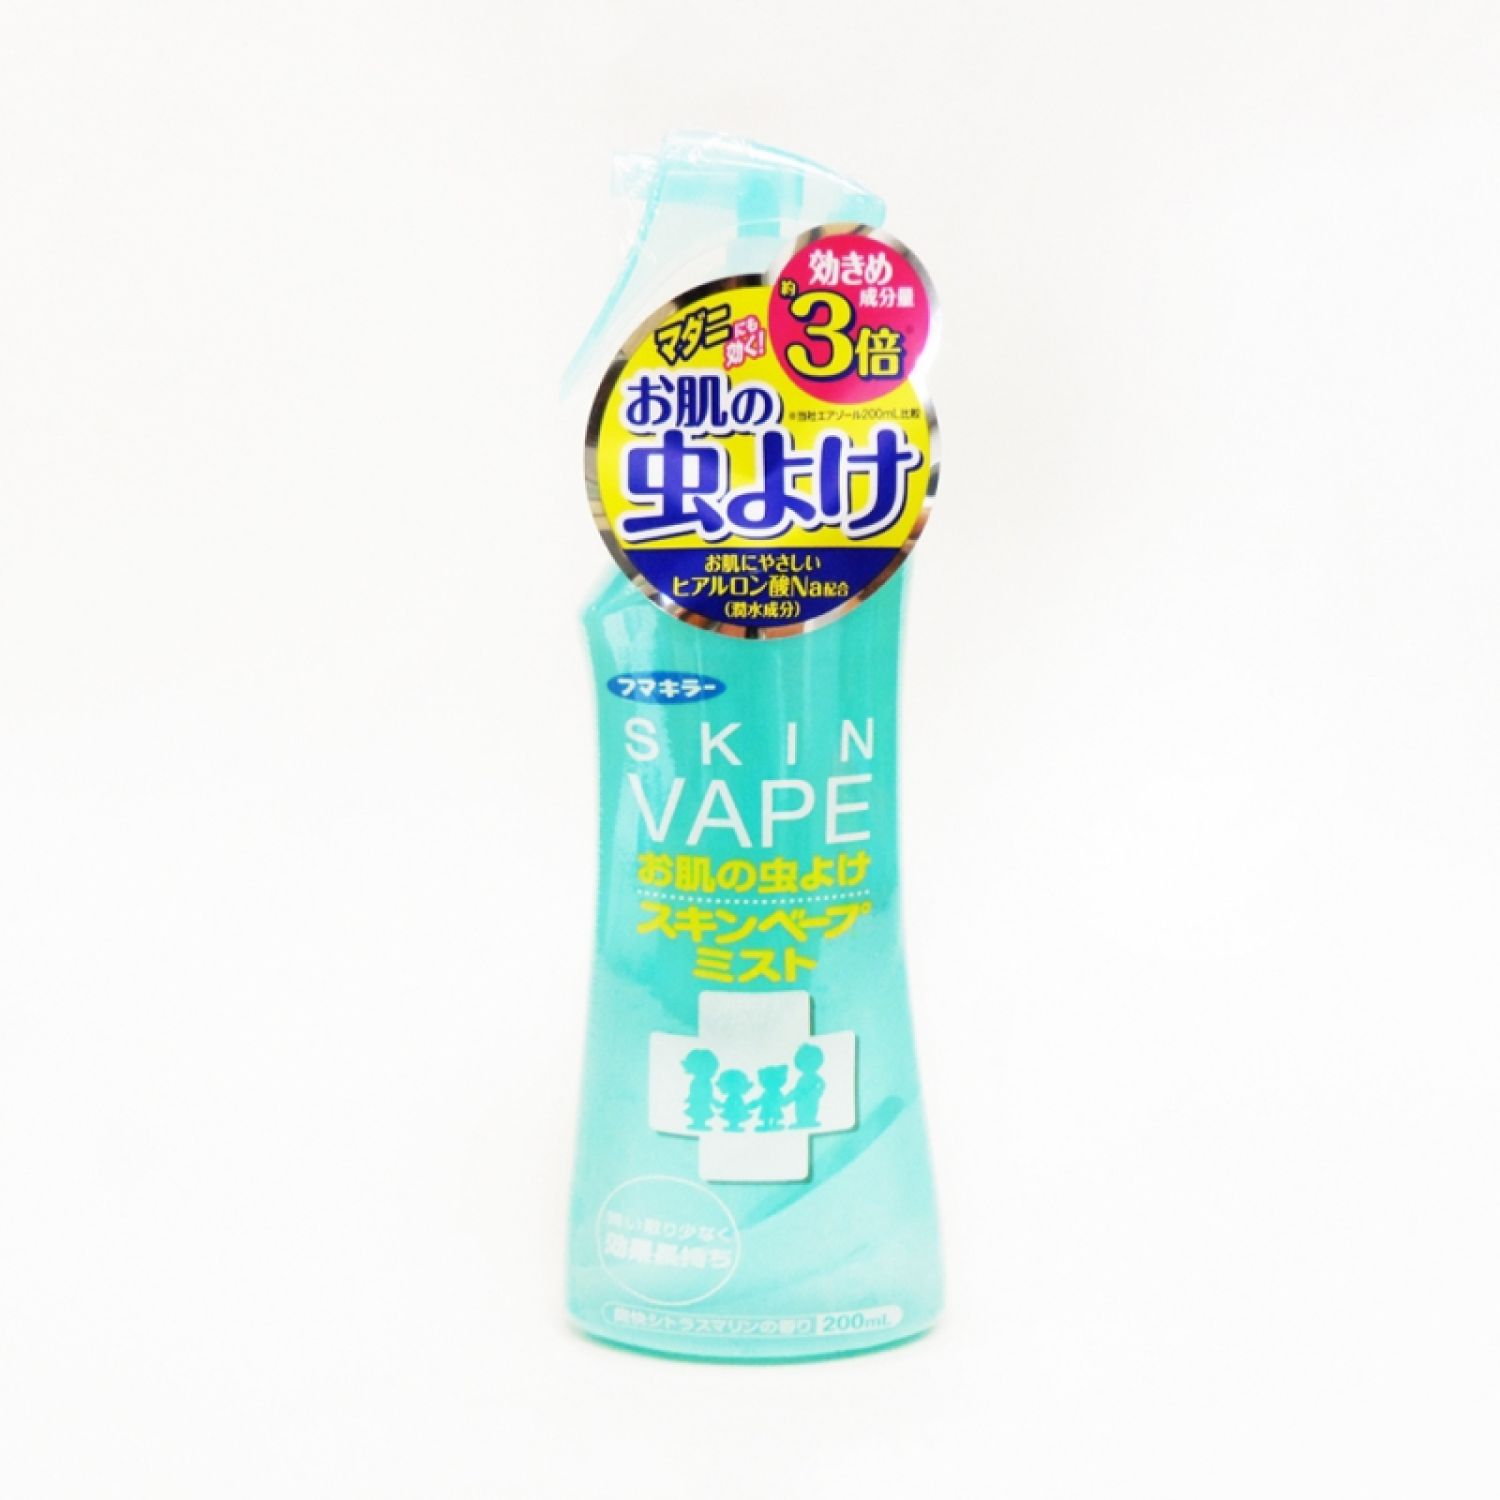 Xịt chống muỗi và côn trùng Skin Vape Nhật Bản 200ml xịt muỗi cho bé hương